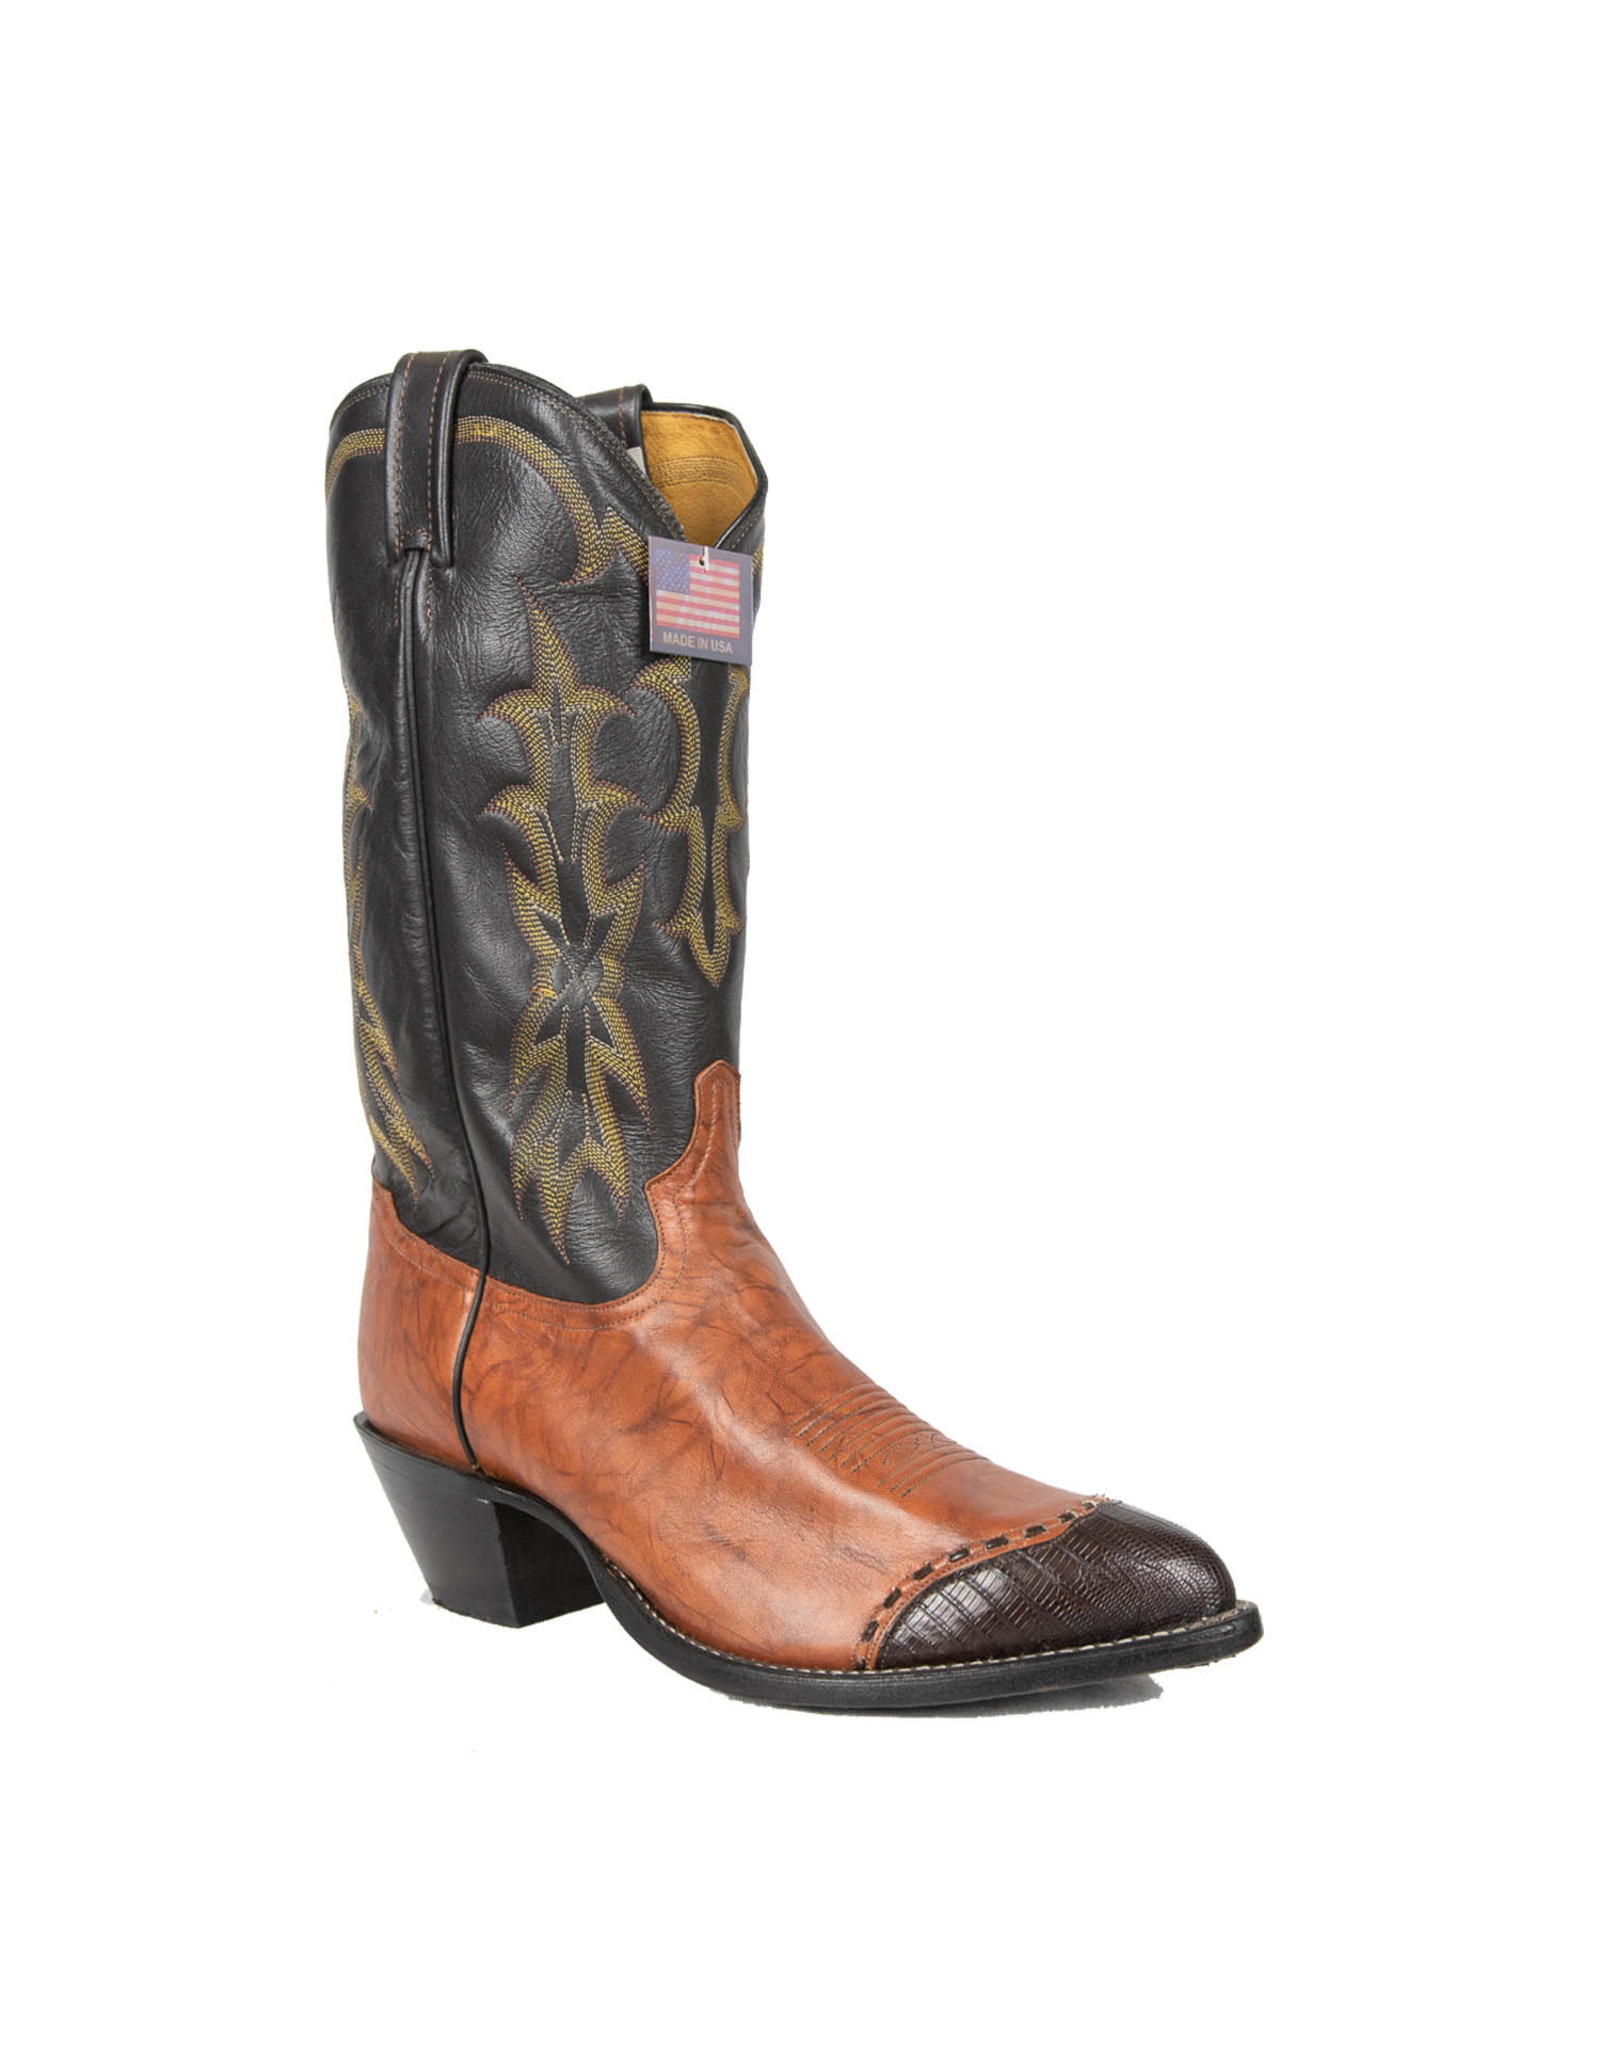 Tony Lama Men's Cowboy Boot Western 